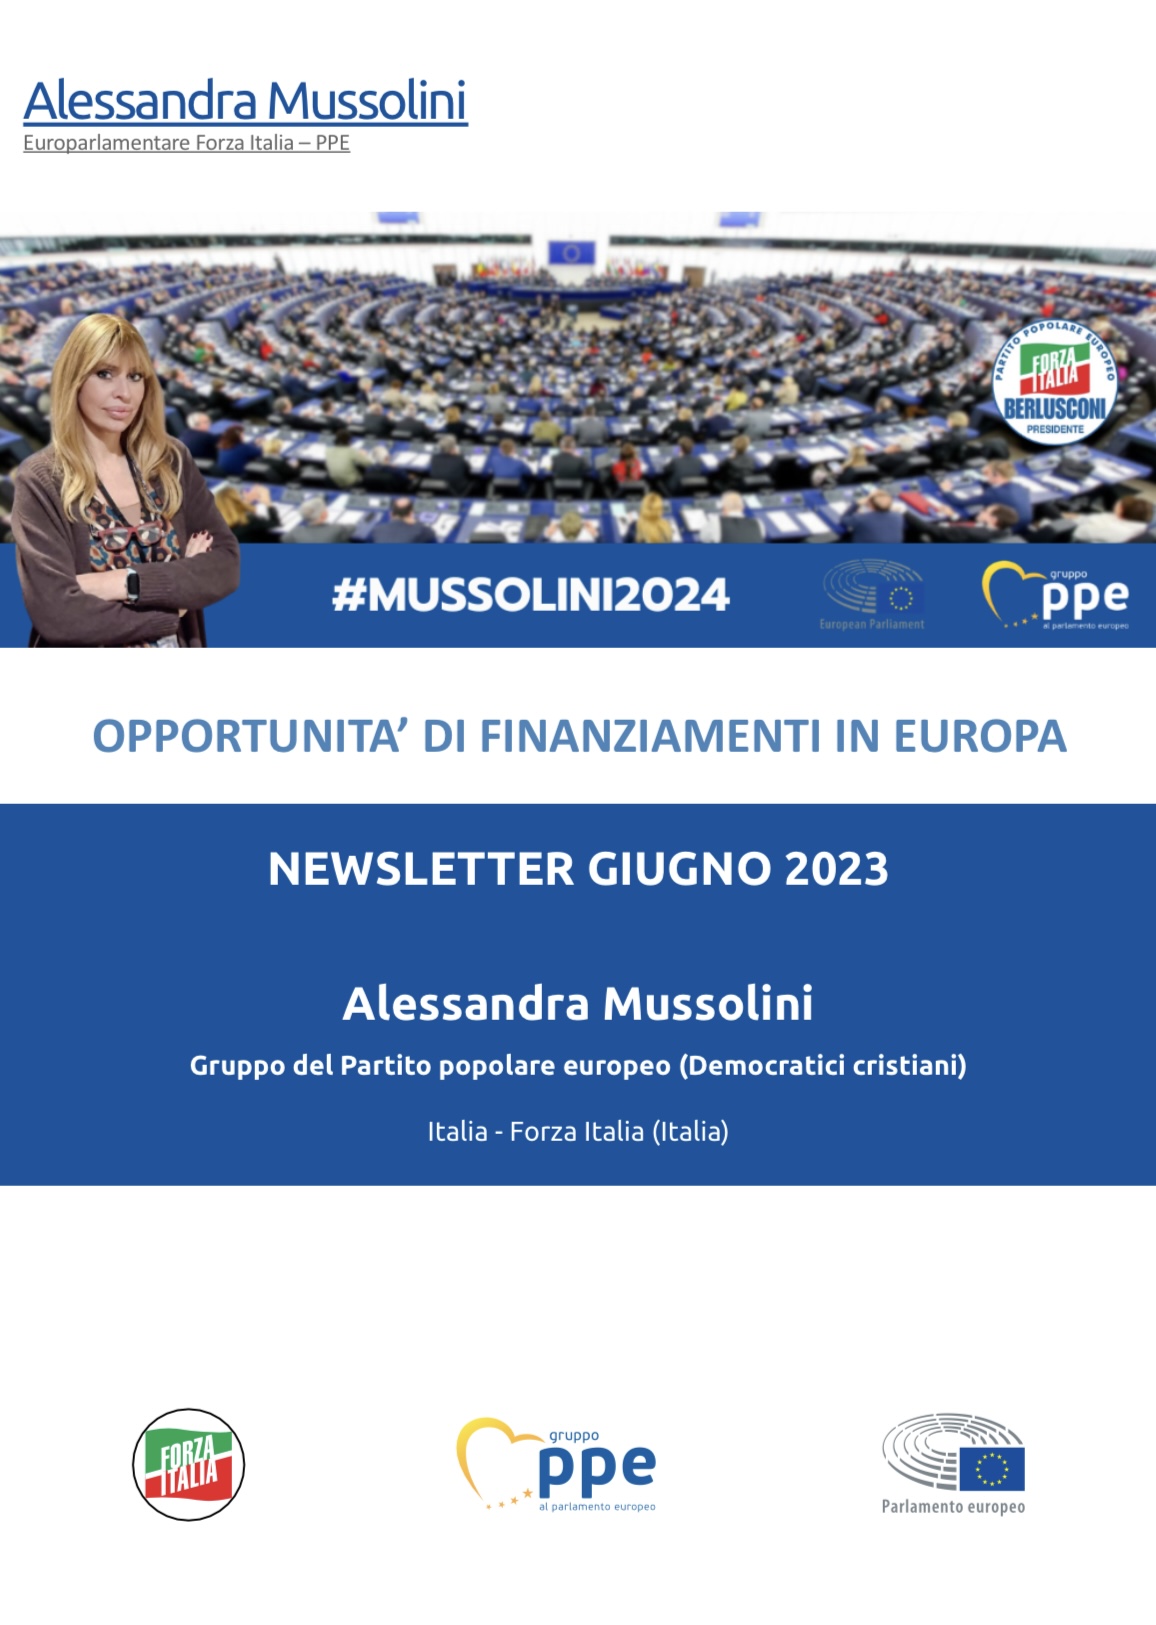 Newsletter di Giugno 2023 sulle opportunità di finanziamenti in Europa